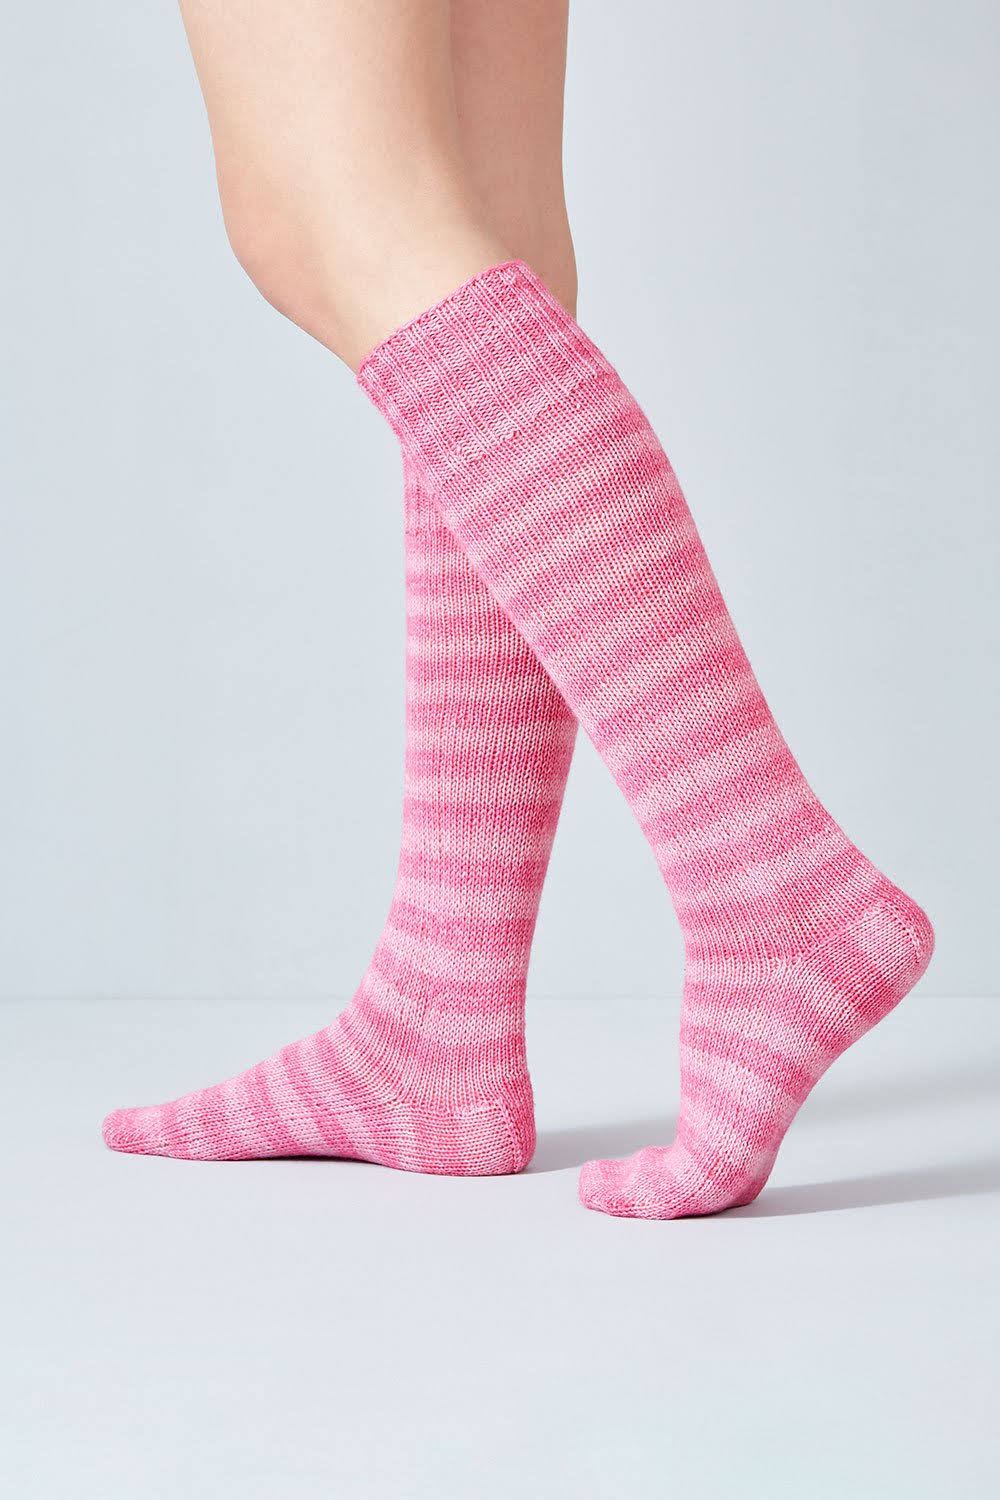 Urth Yarns - Uneek Sock Kits - 2 x 50g Pink